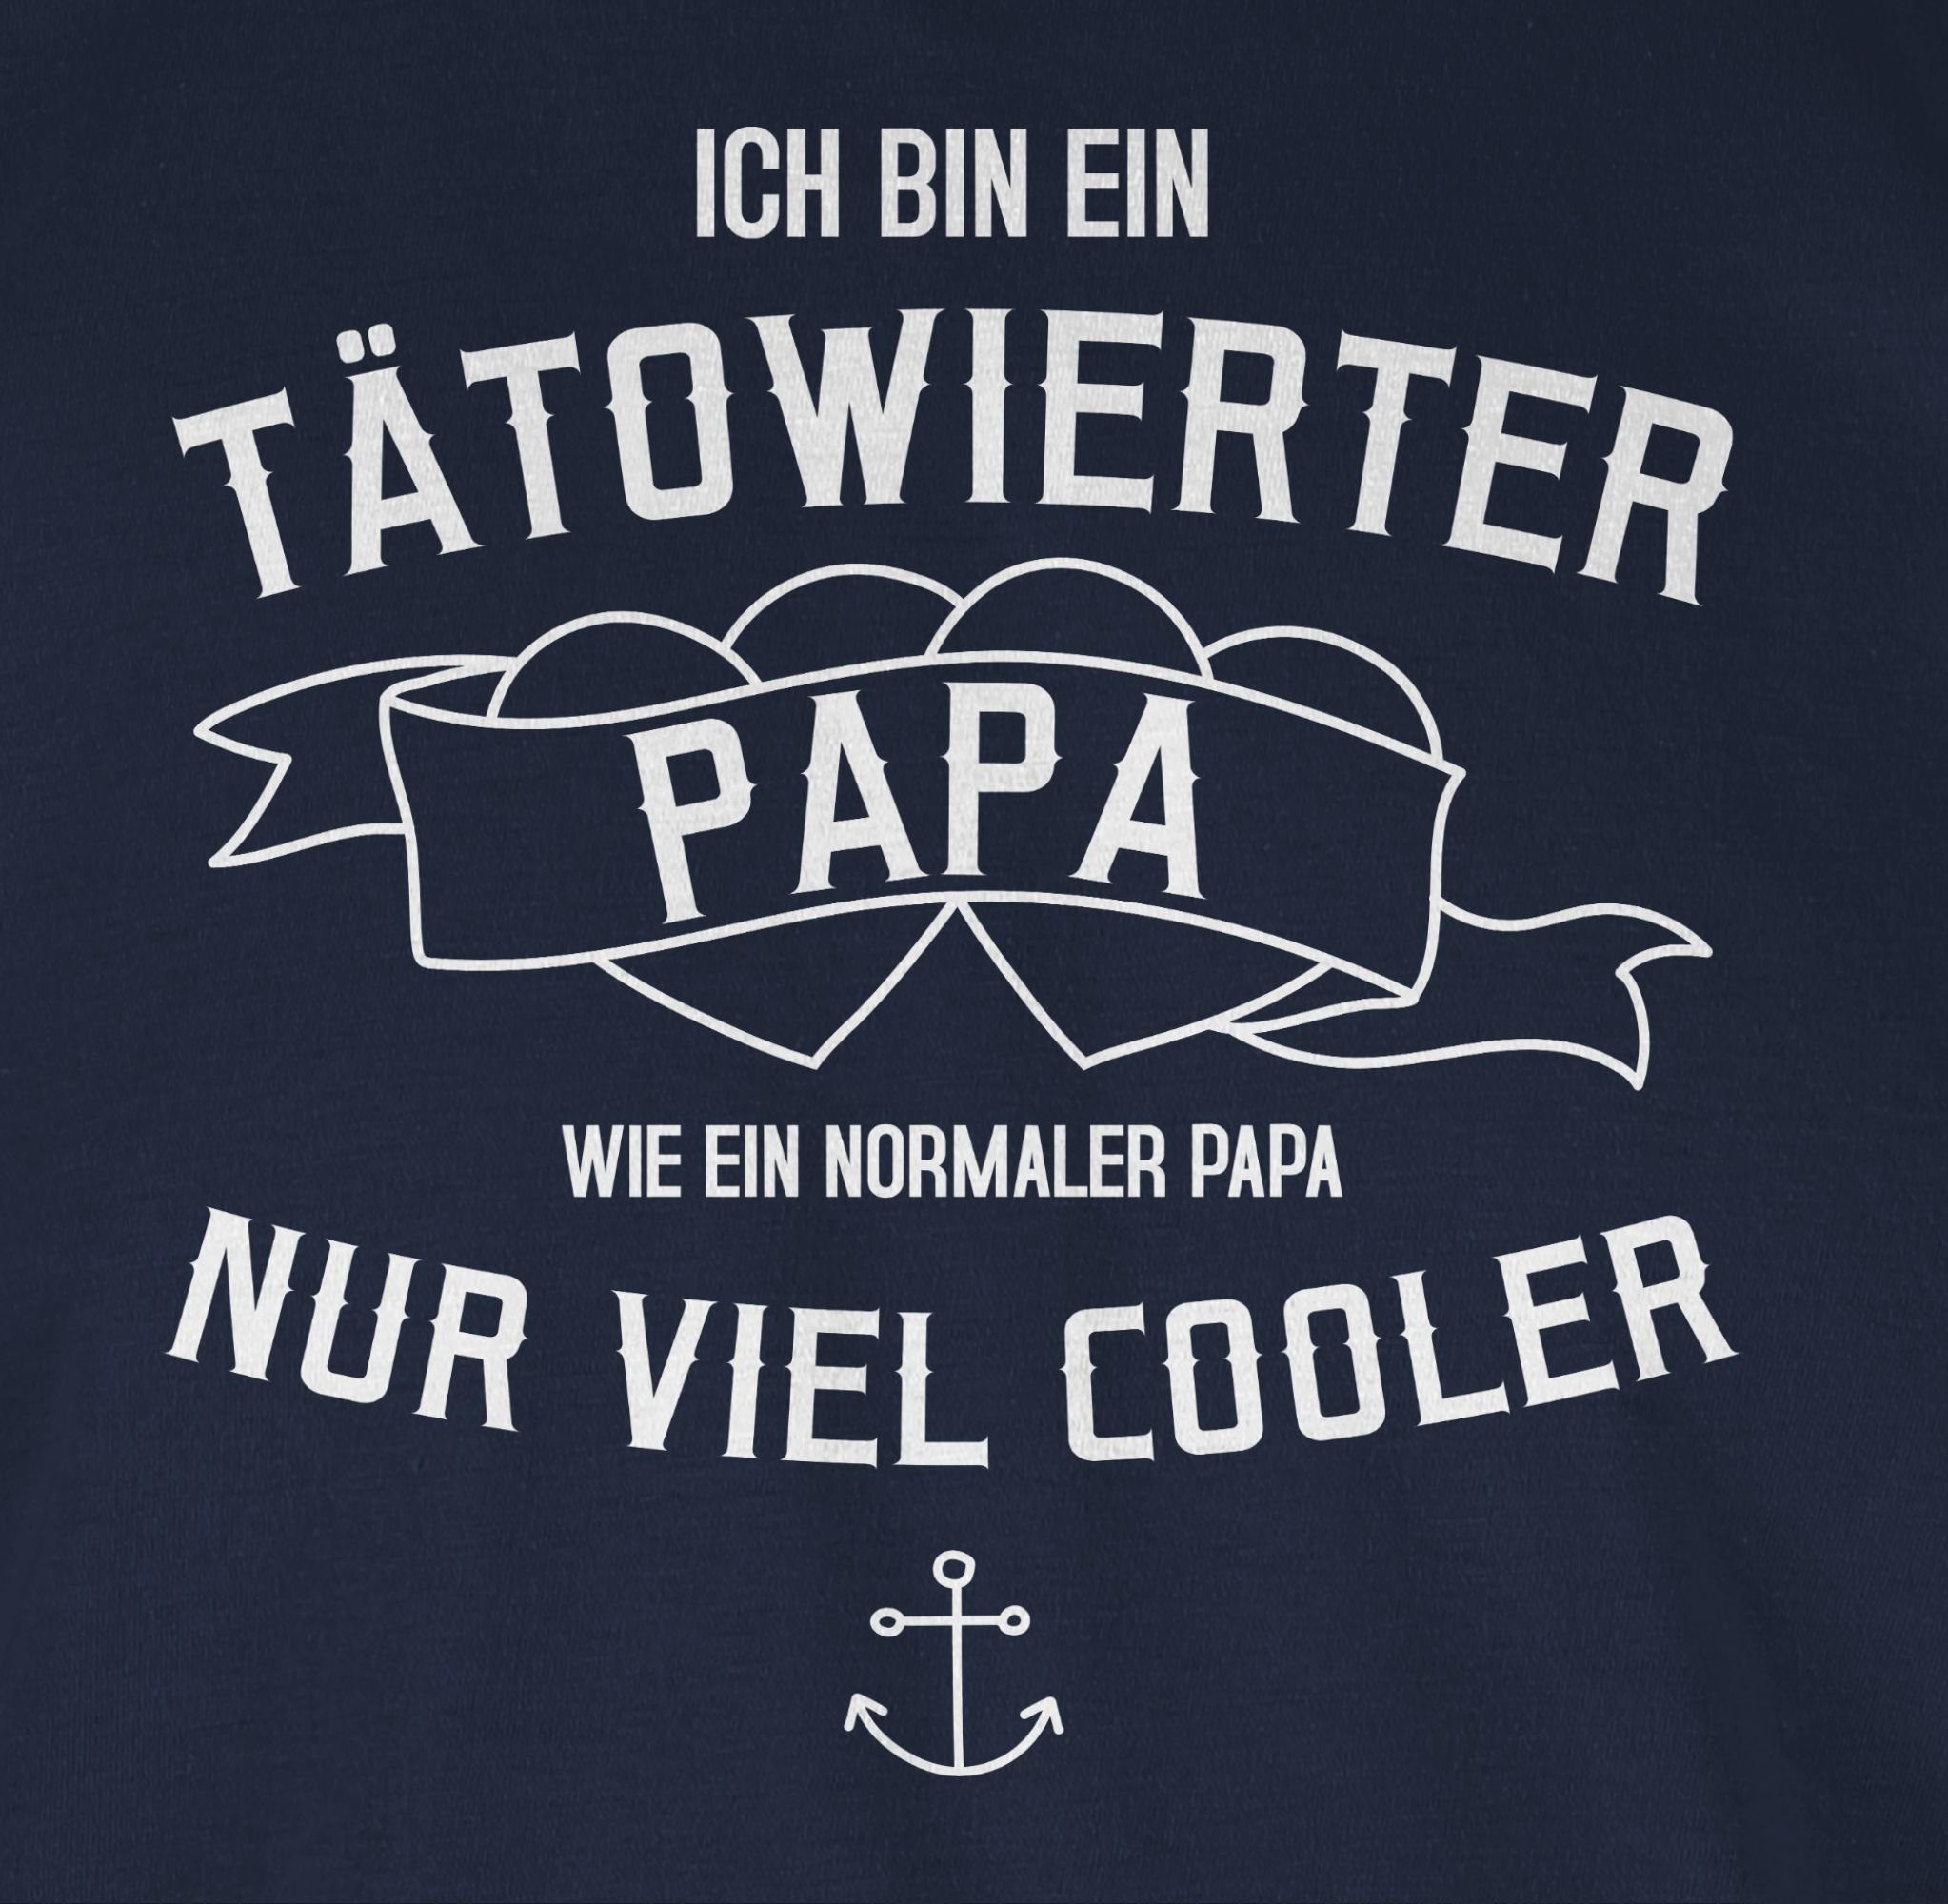 Shirtracer T-Shirt bin Papa tätowierter Blau Geschenk Vatertag Navy Papa 3 Ich ein für